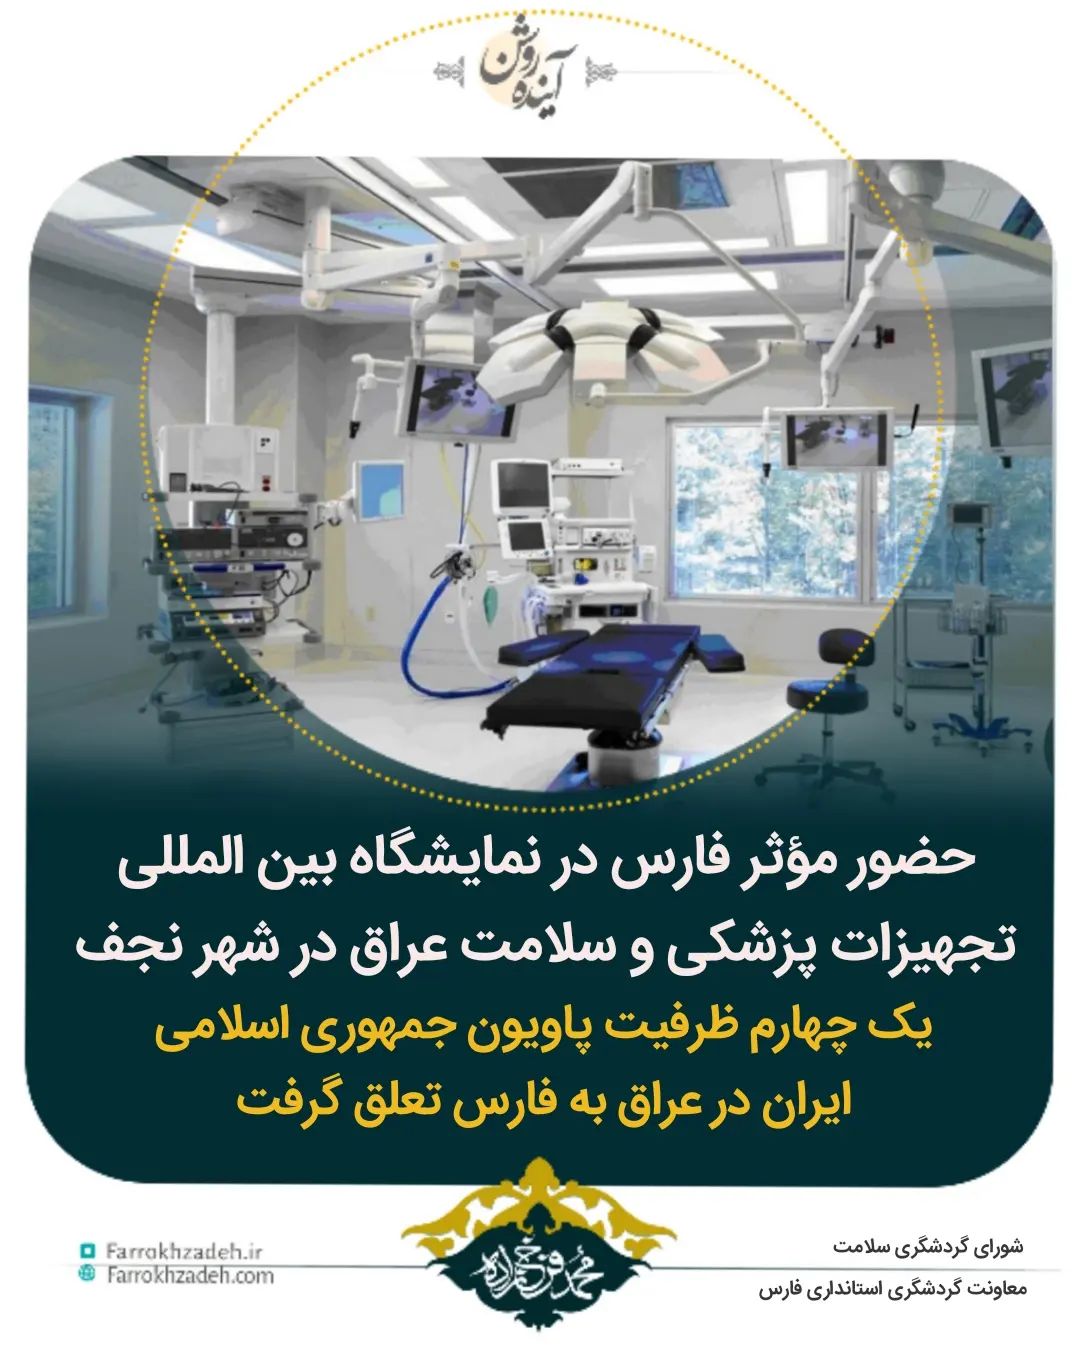 حضور موثر فارس در نمایشگاه بین المللی تجهیزات پزشکی و سلامت عراق در شهر نجف/یک چهارم ظرفیت پاویون جمهوری اسلامی ایران در عراق به فارس تعلق گرفت